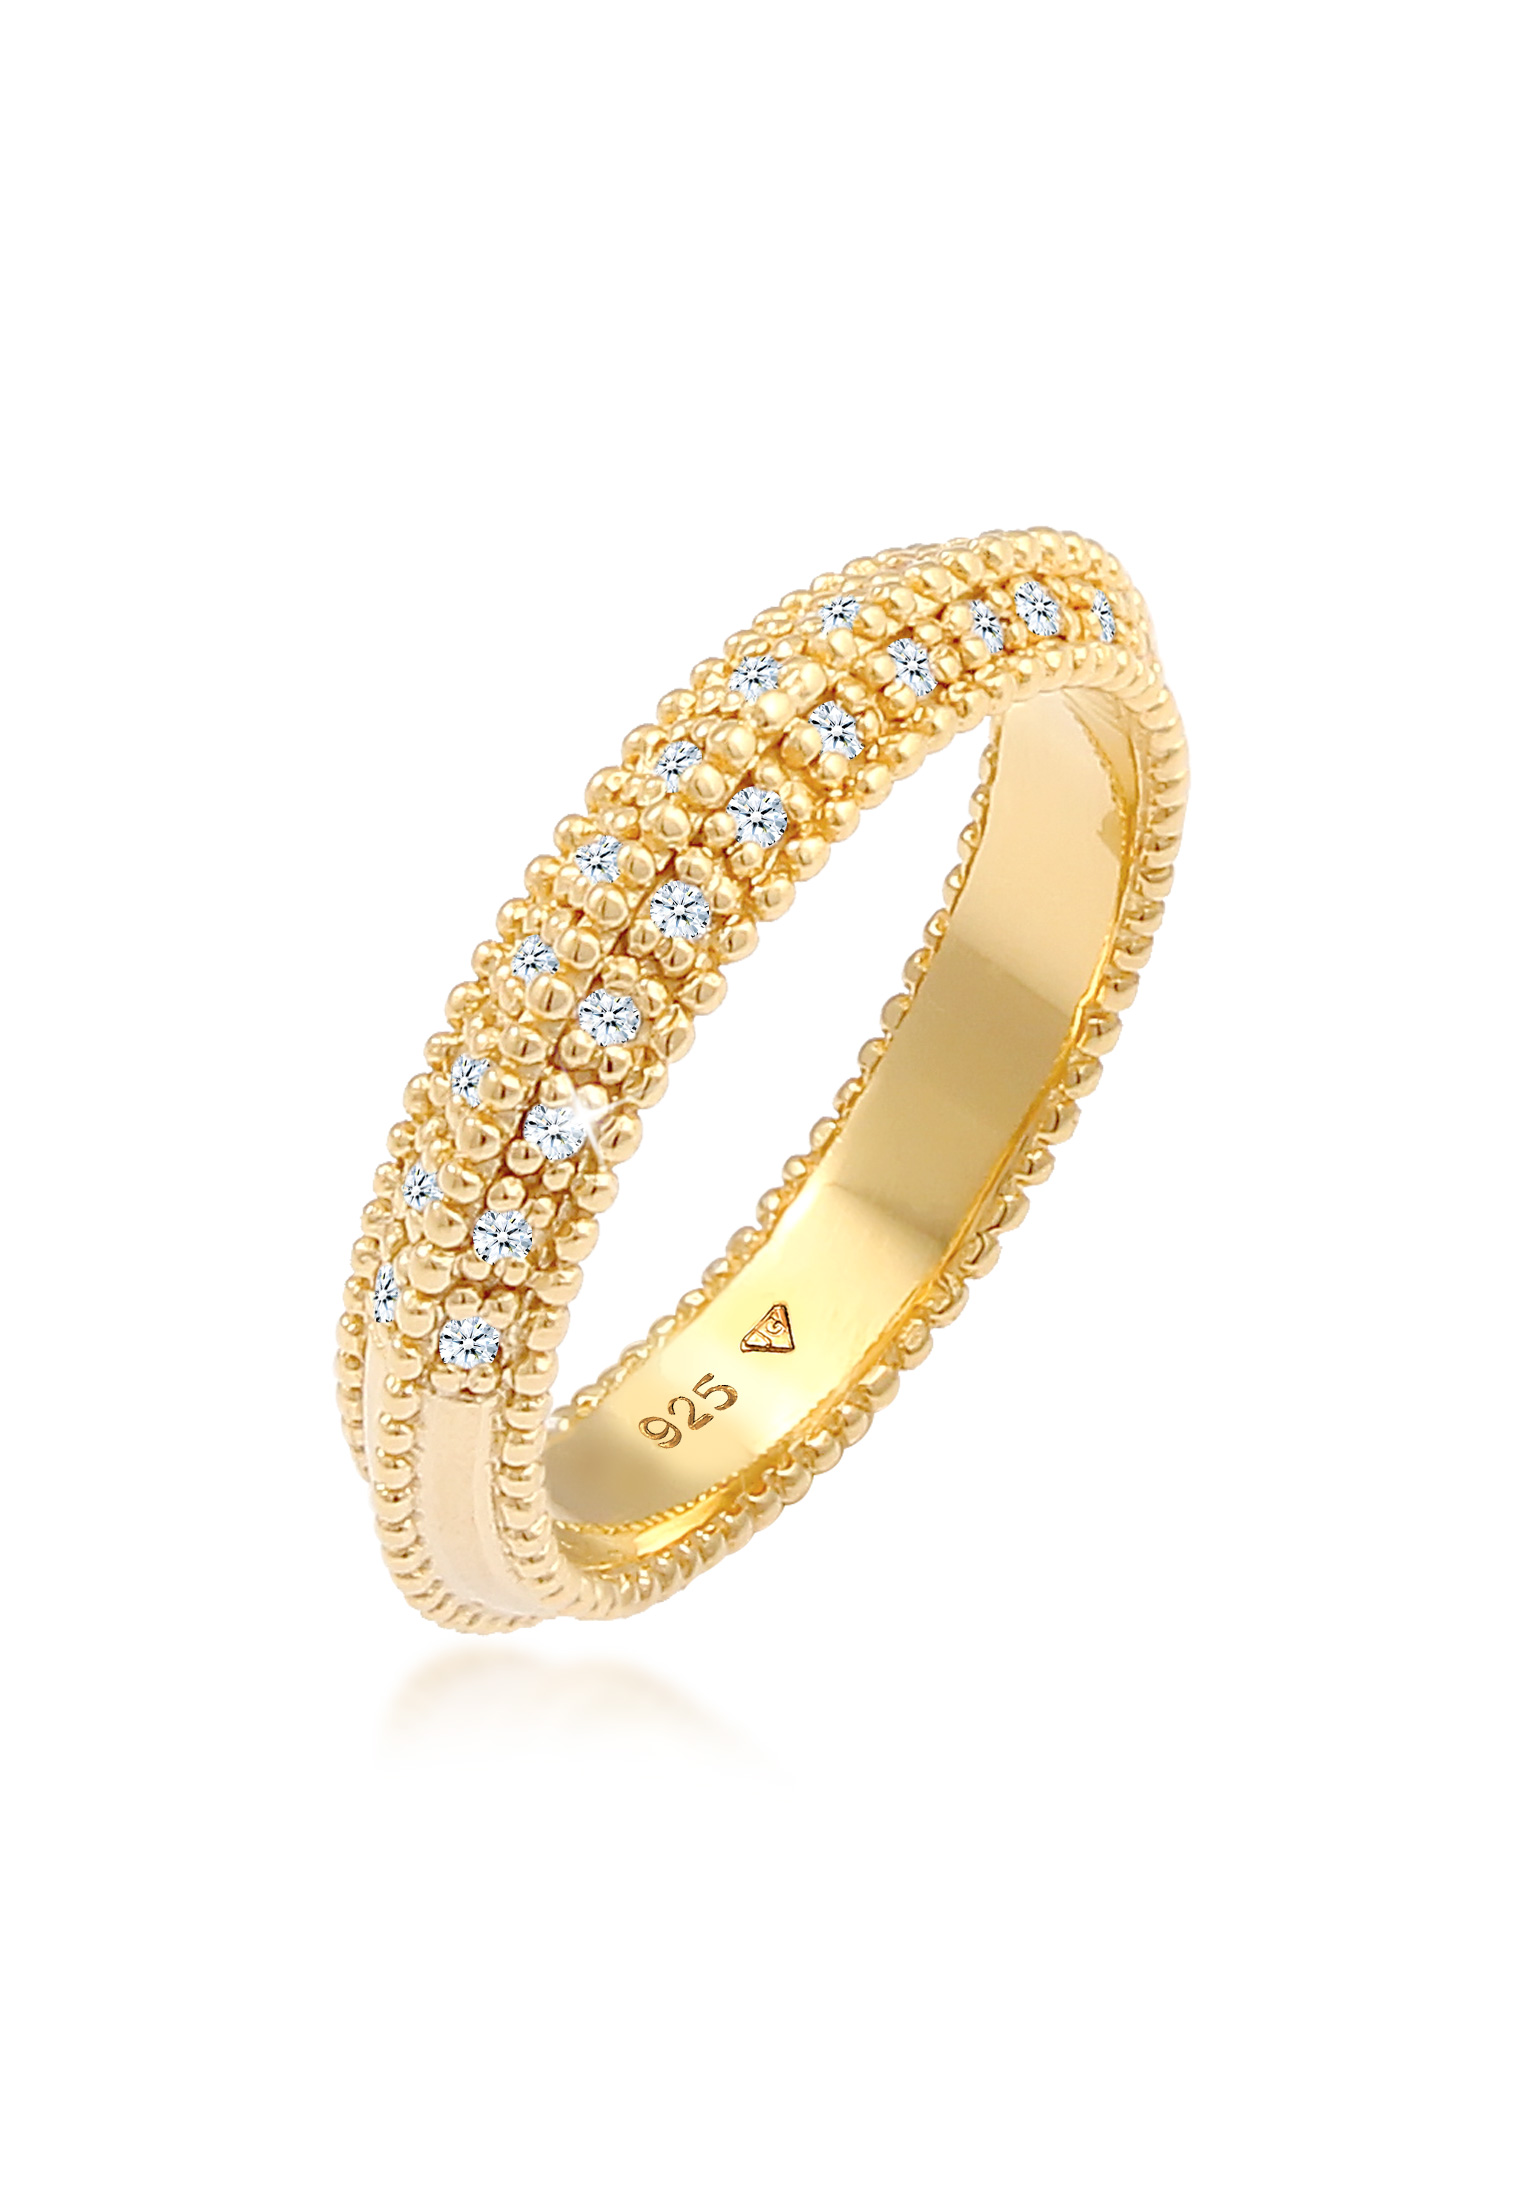 Elli Jewelry 環形訂婚鑽石鍍金